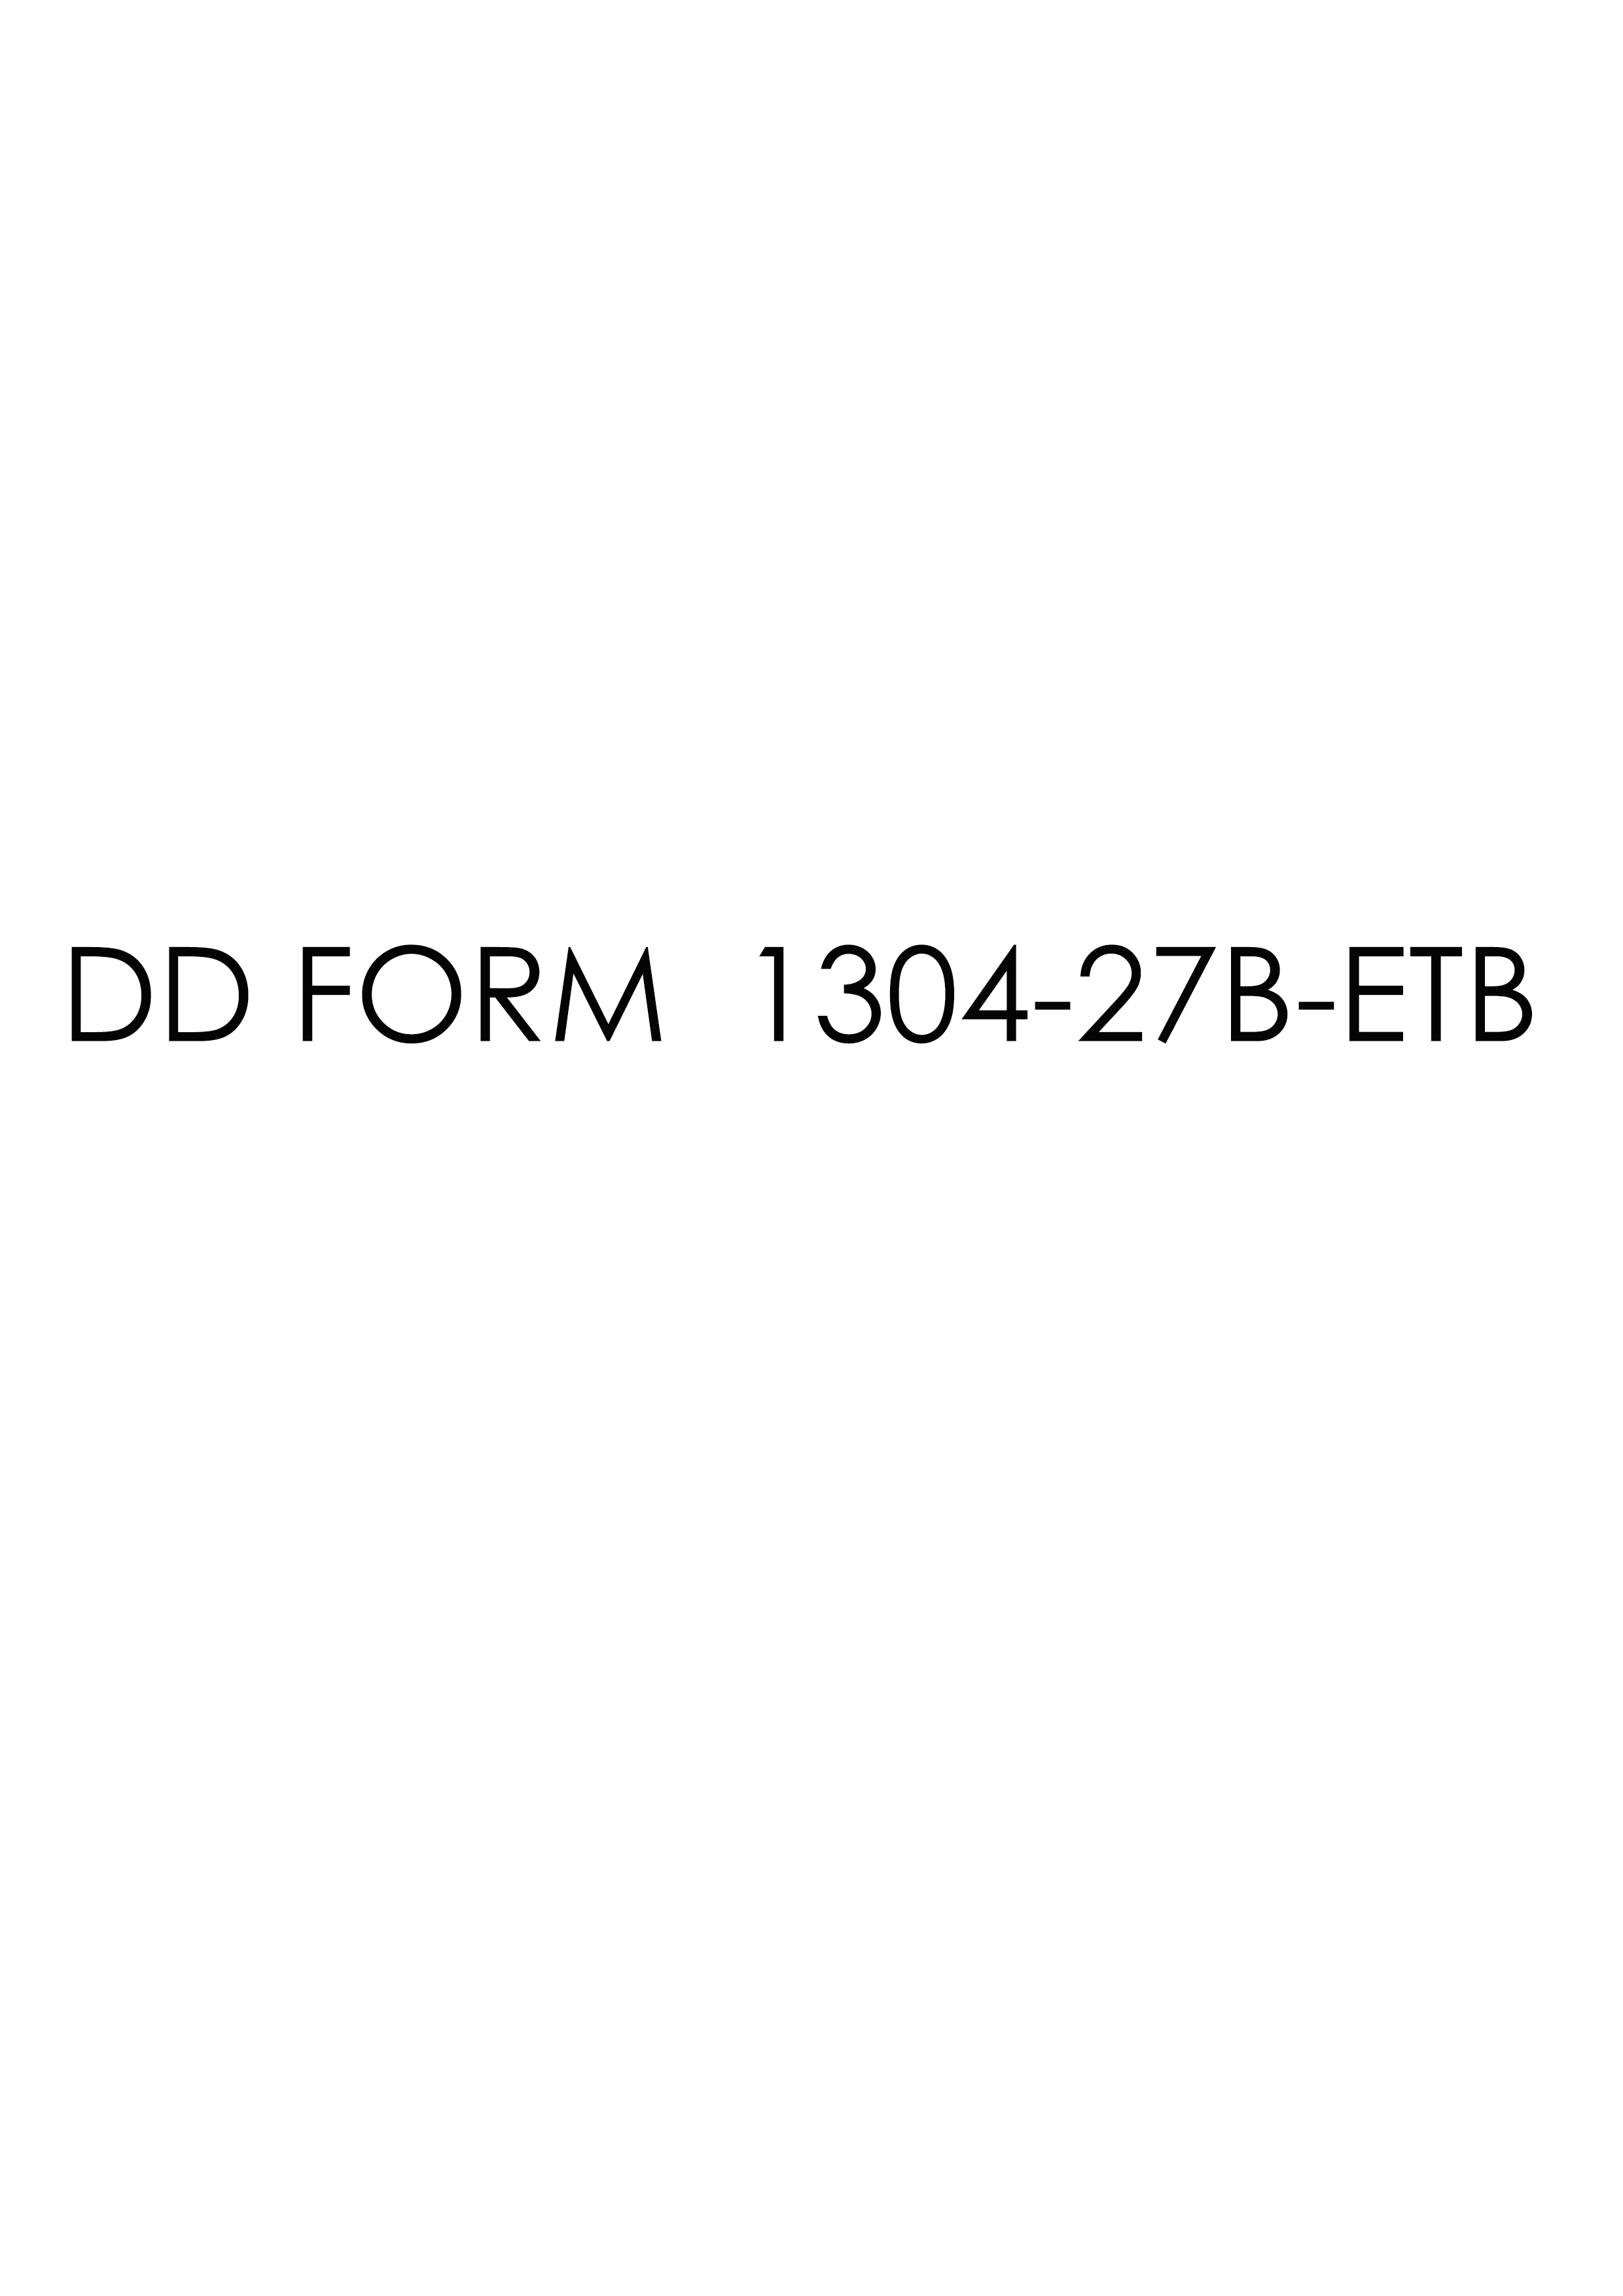 Download dd Form 1304-27B-ETB